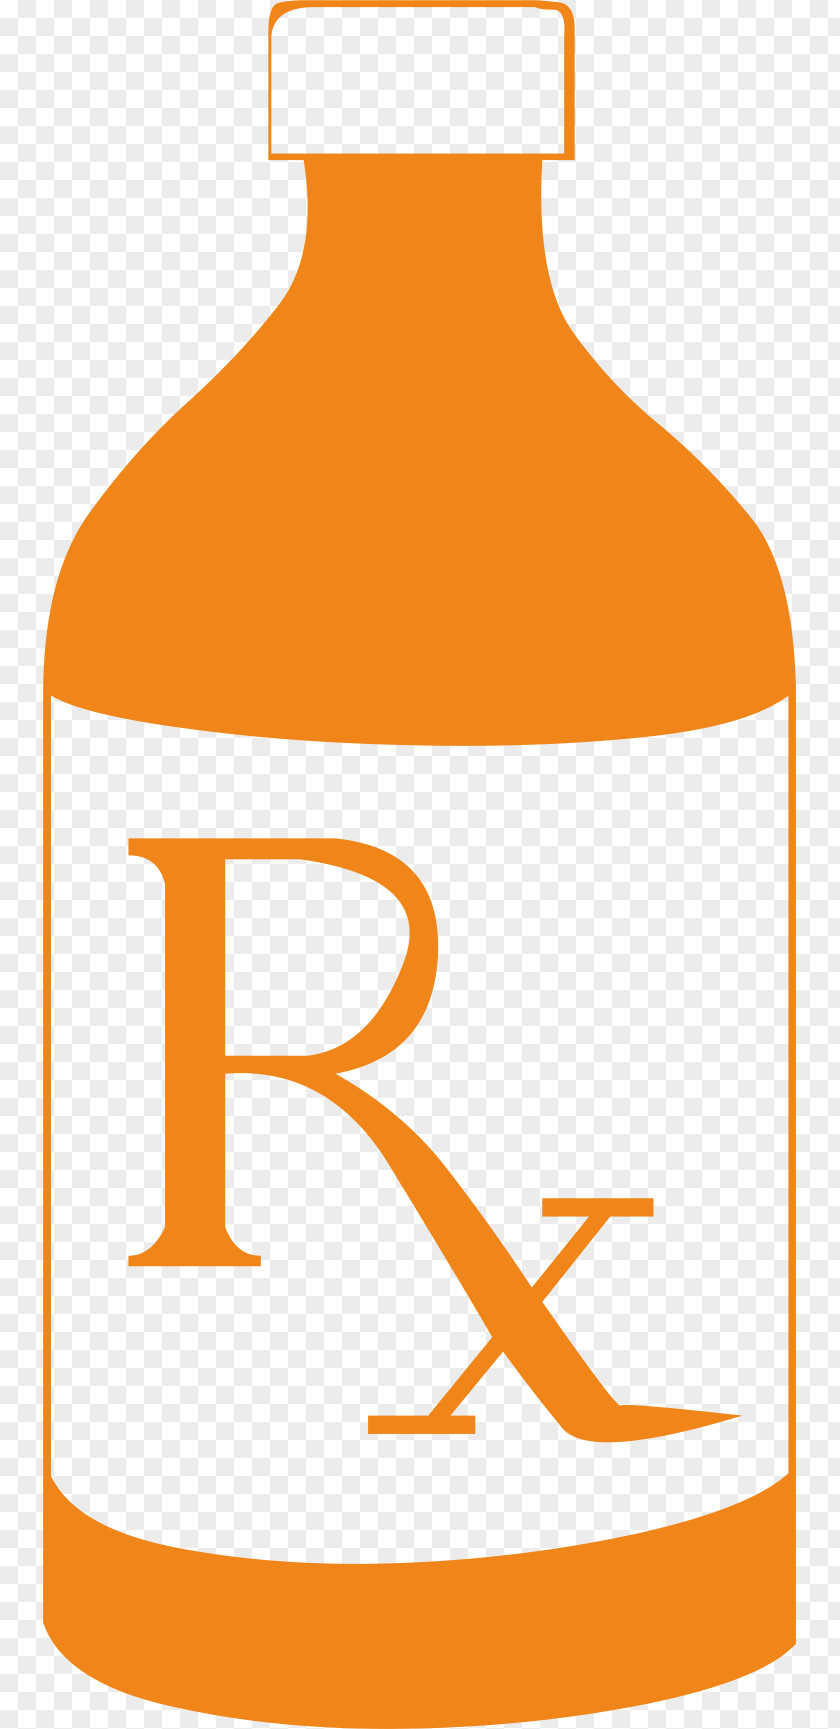 Tablet Bottle Pharmaceutical Drug Medicine Medical Prescription Clip Art PNG